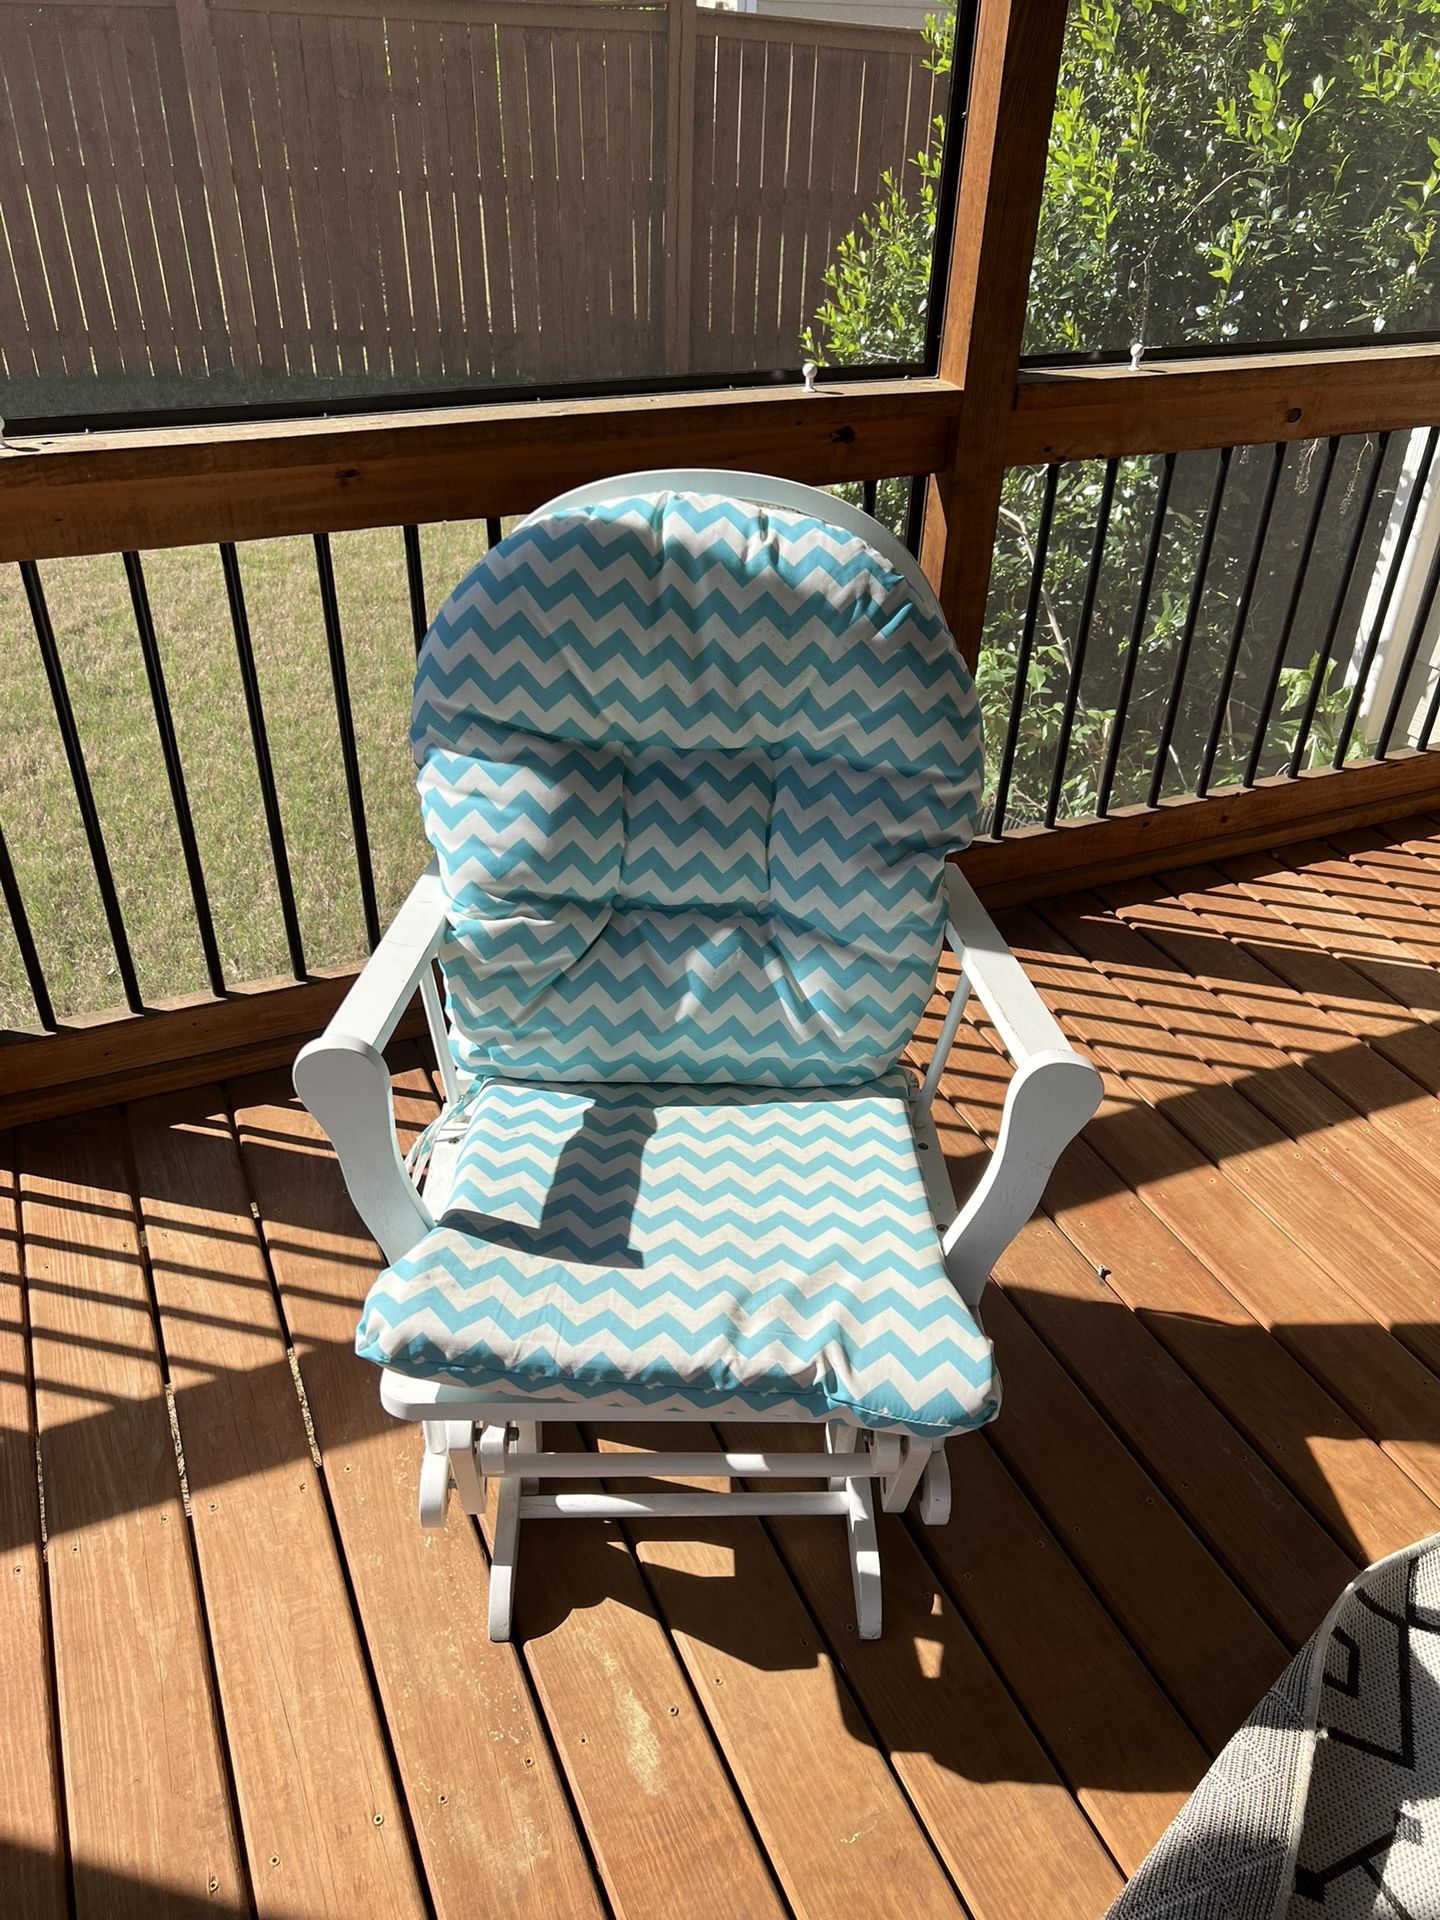 Nursery Chair